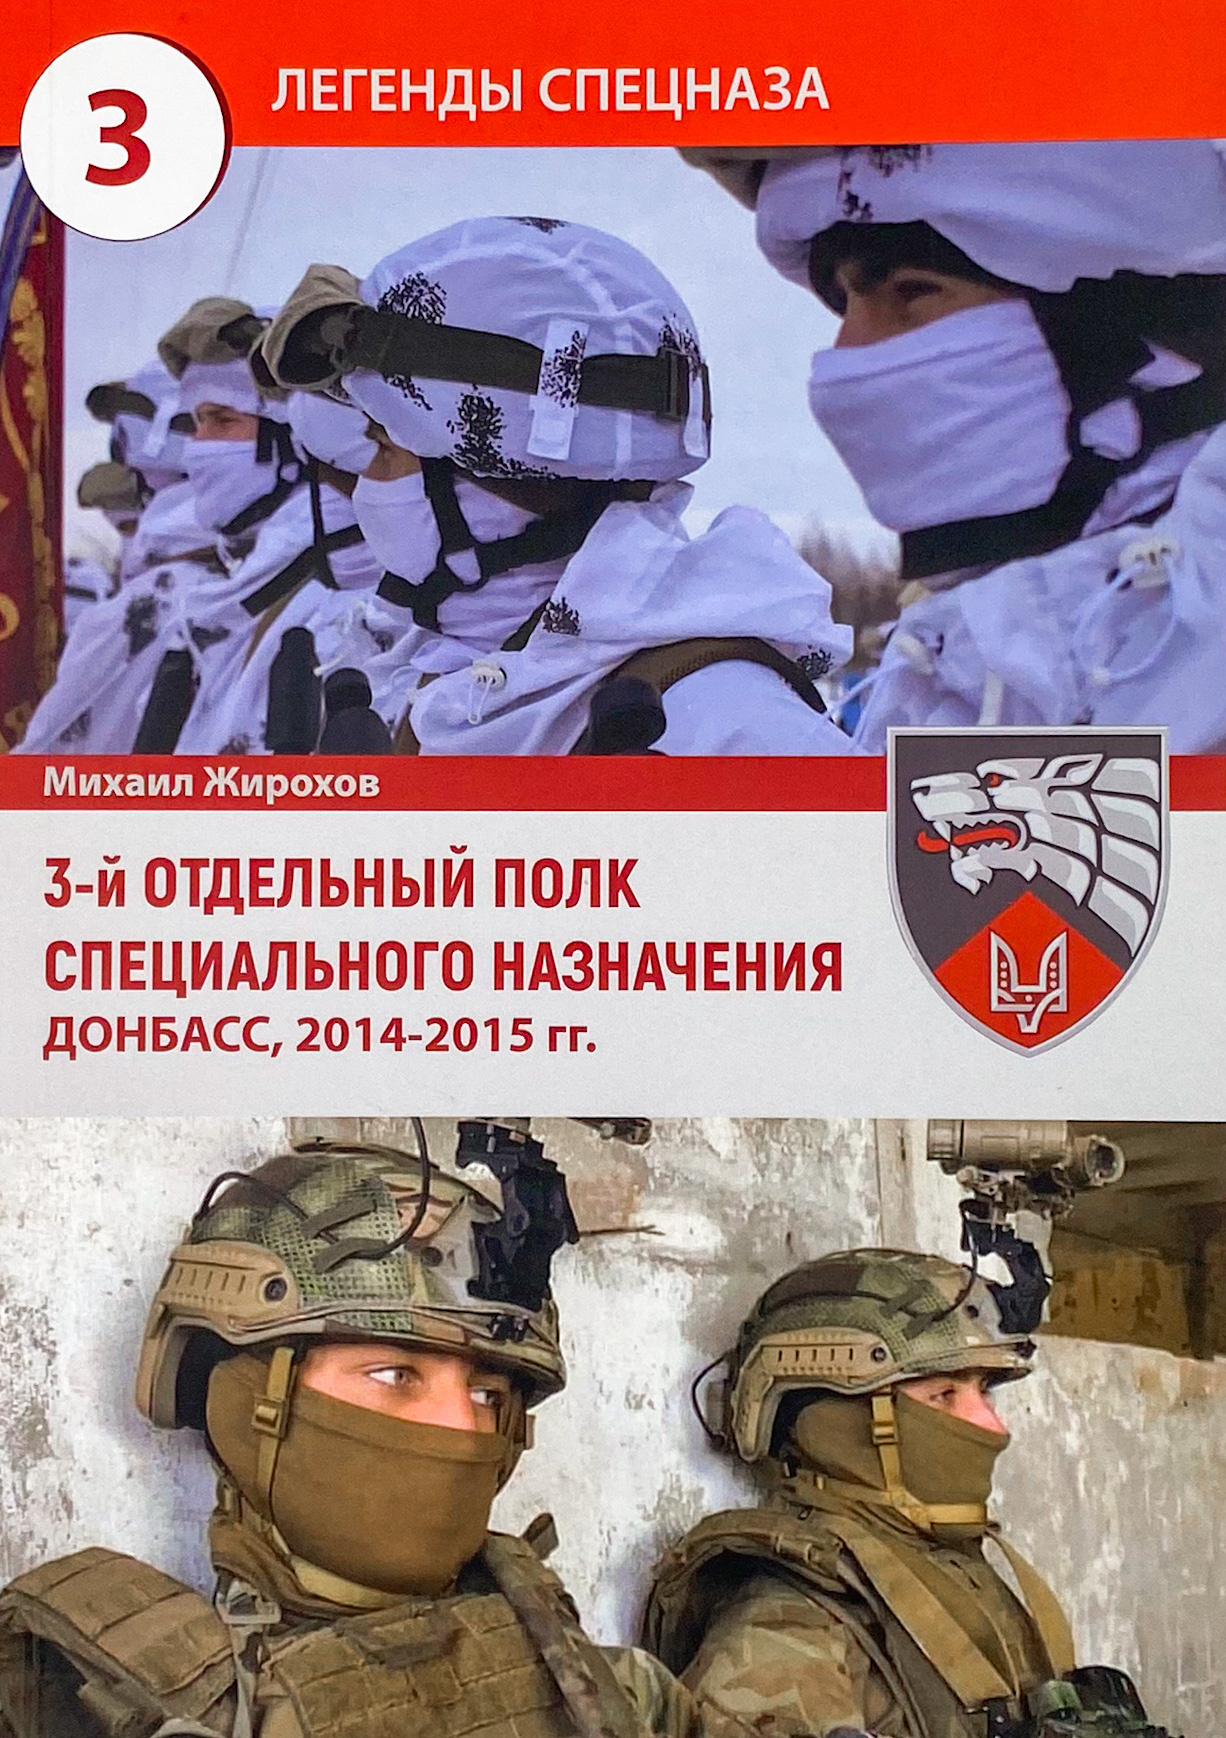 История участия 3-го отдельного полка специального назначения в войне на Донбассе (2014-2015 гг.)